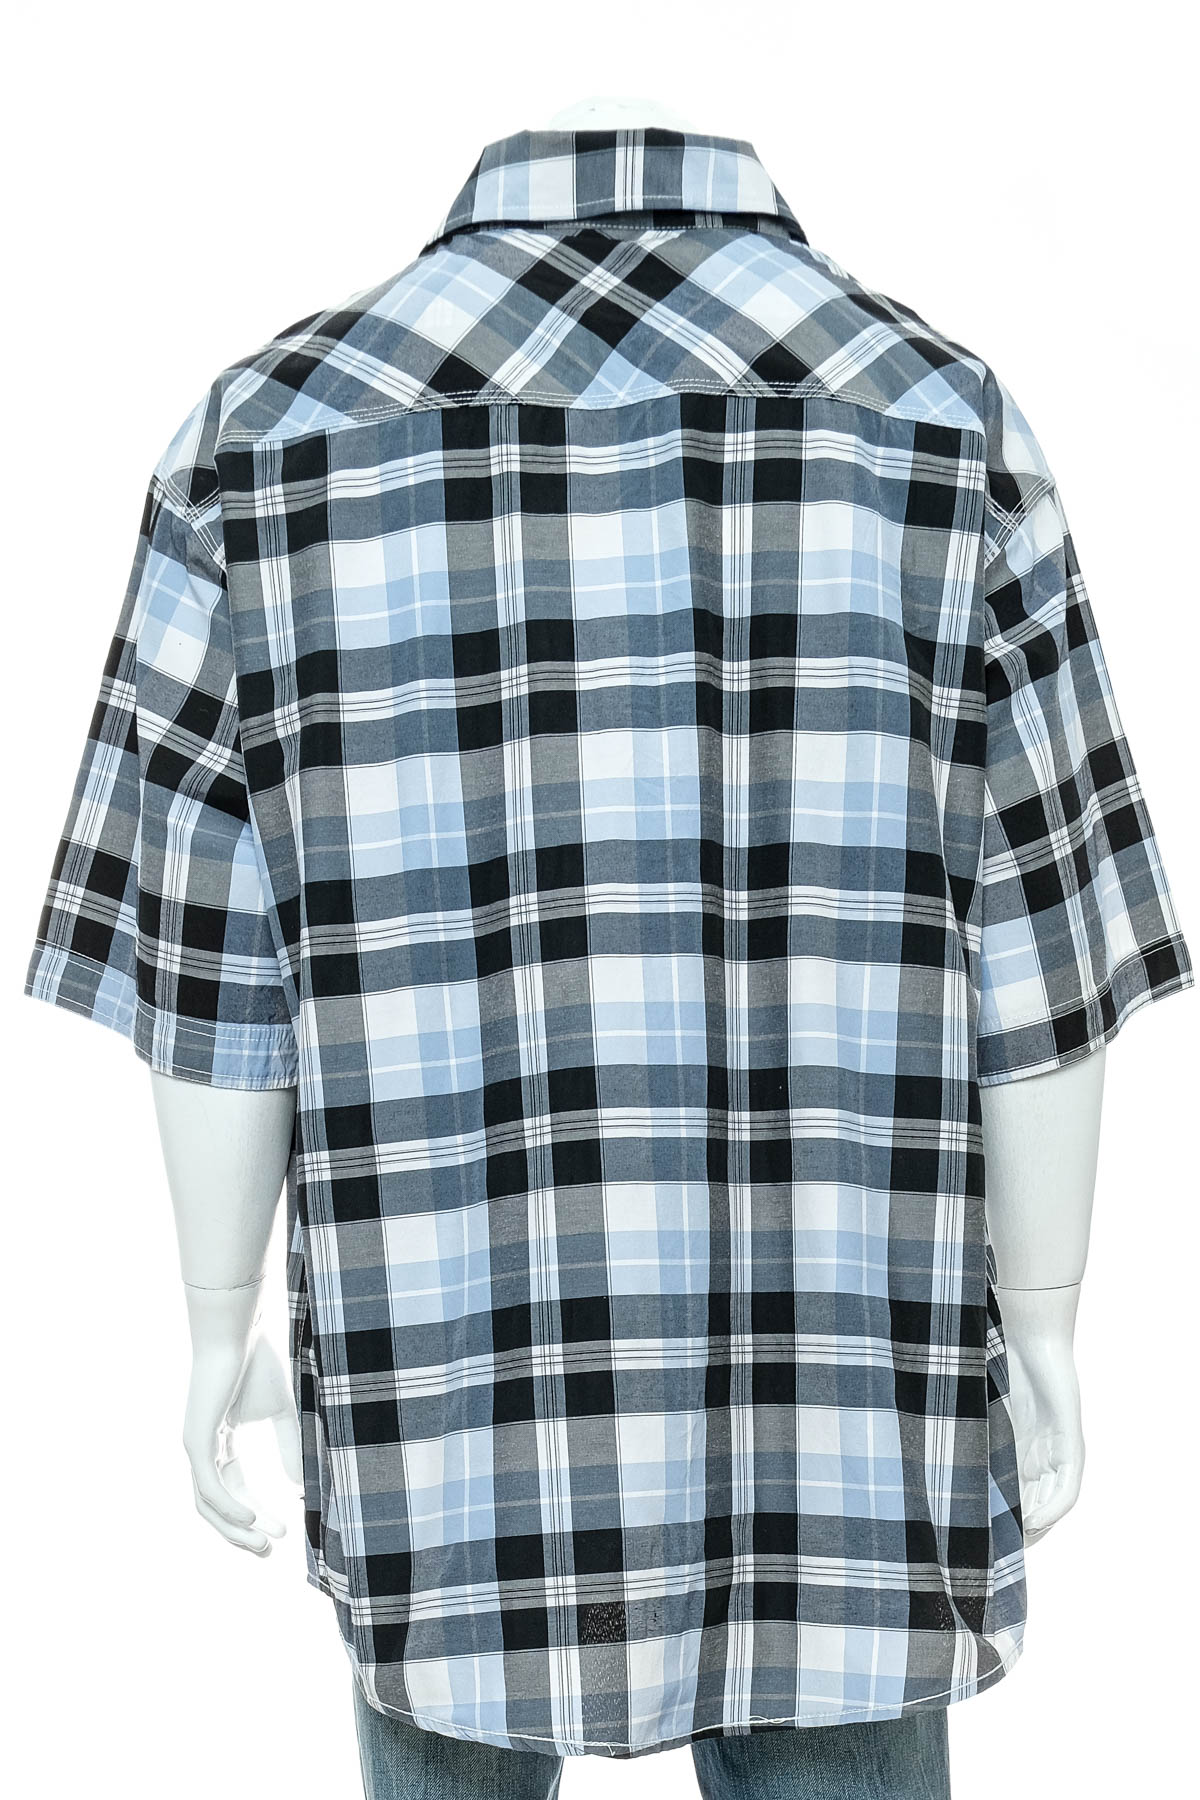 Ανδρικό πουκάμισο - Ecko Unltd - 1